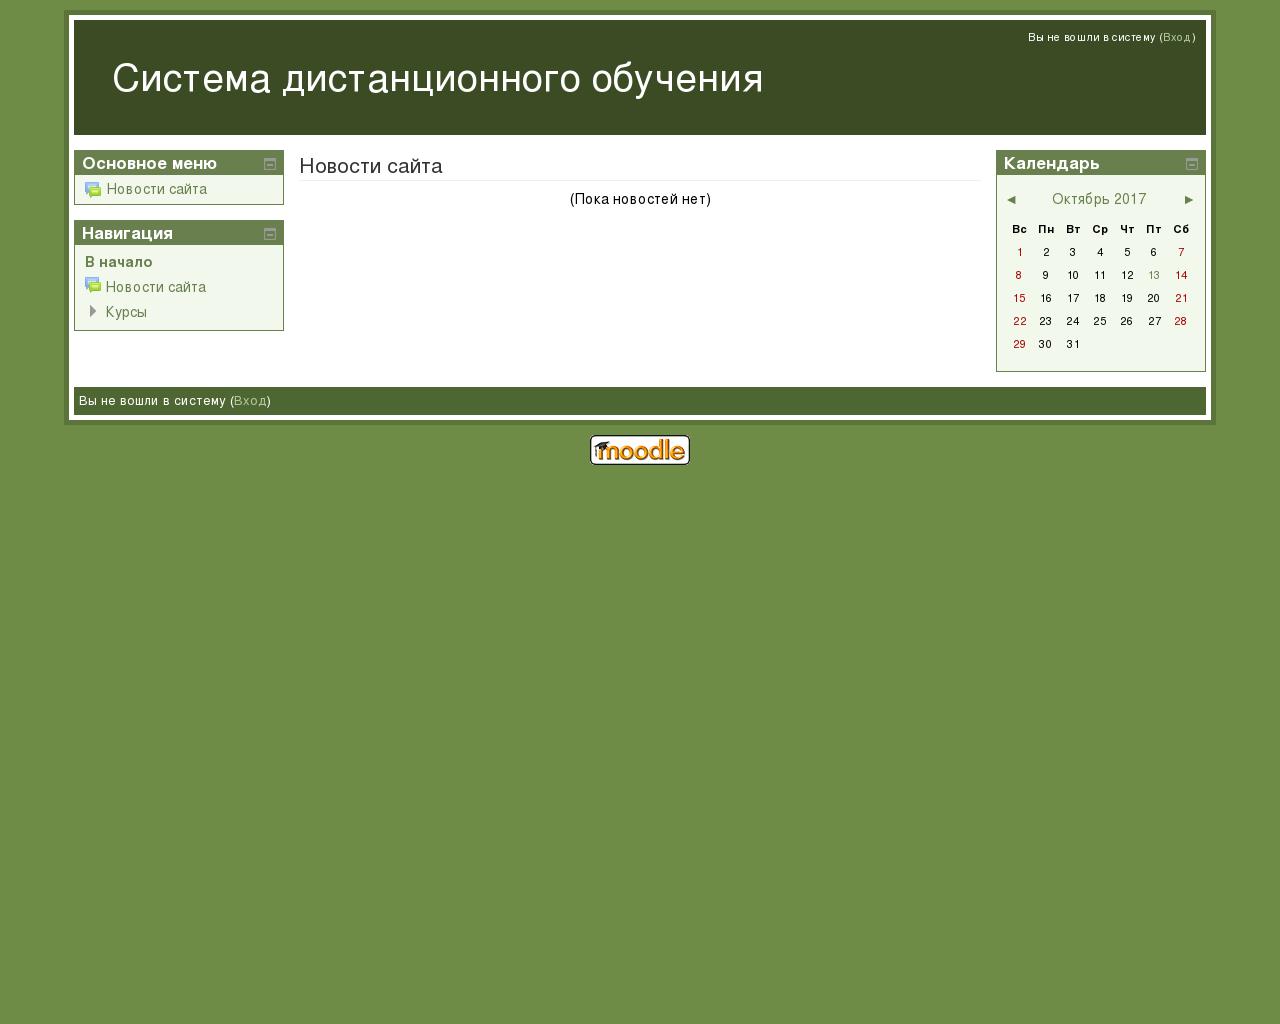 Изображение сайта uimk.ru в разрешении 1280x1024